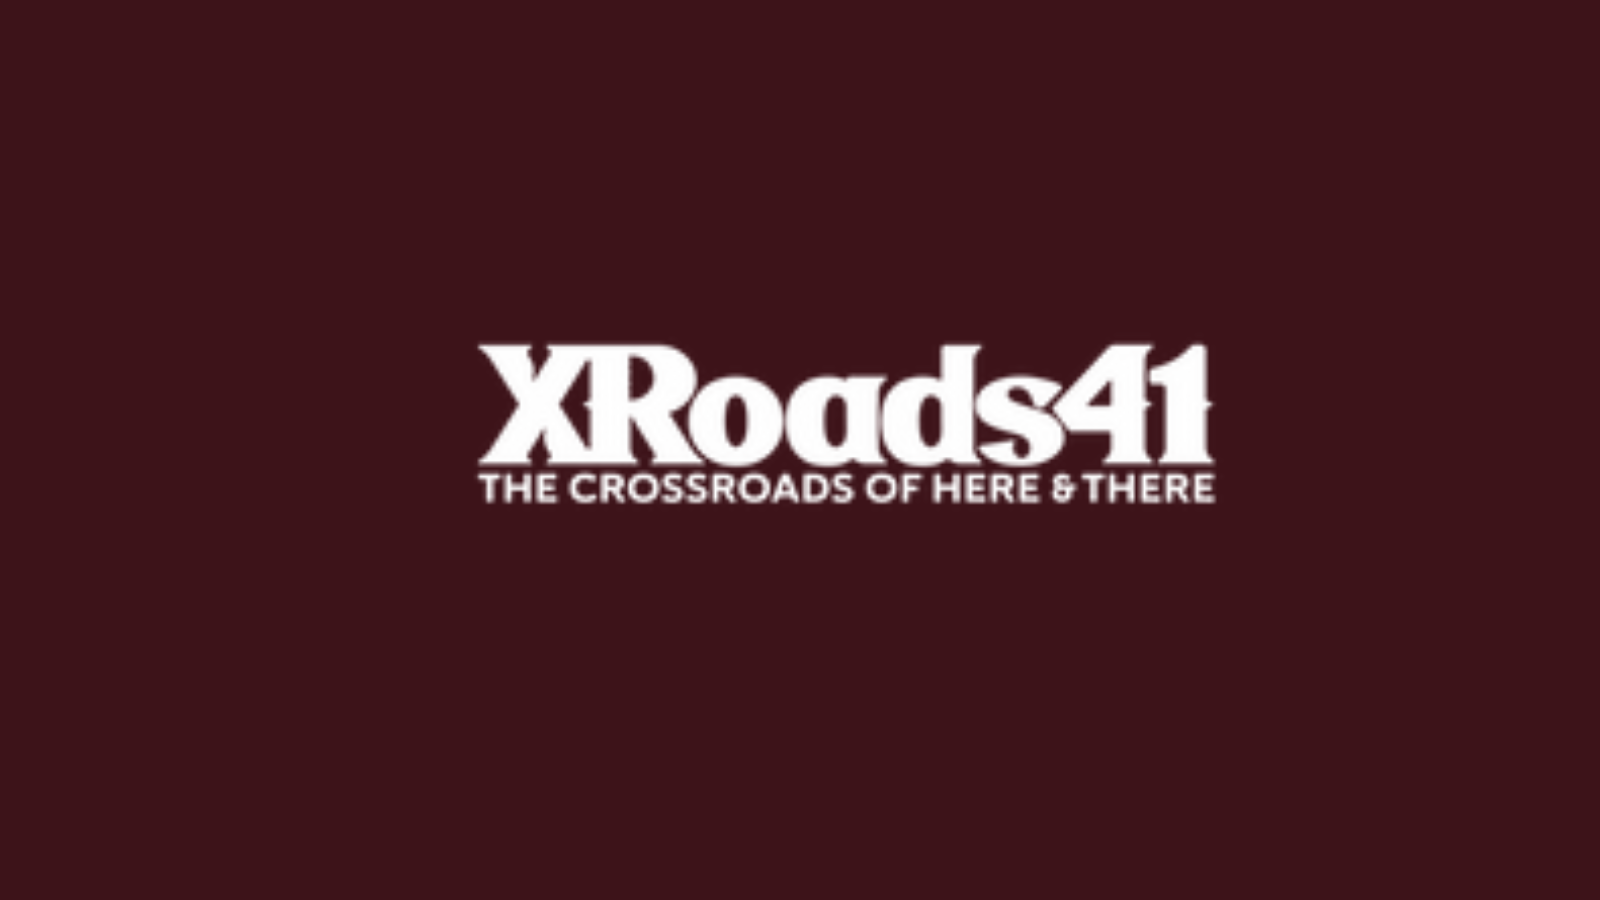 XRoads 41 to bring large music festival back to Oshkosh